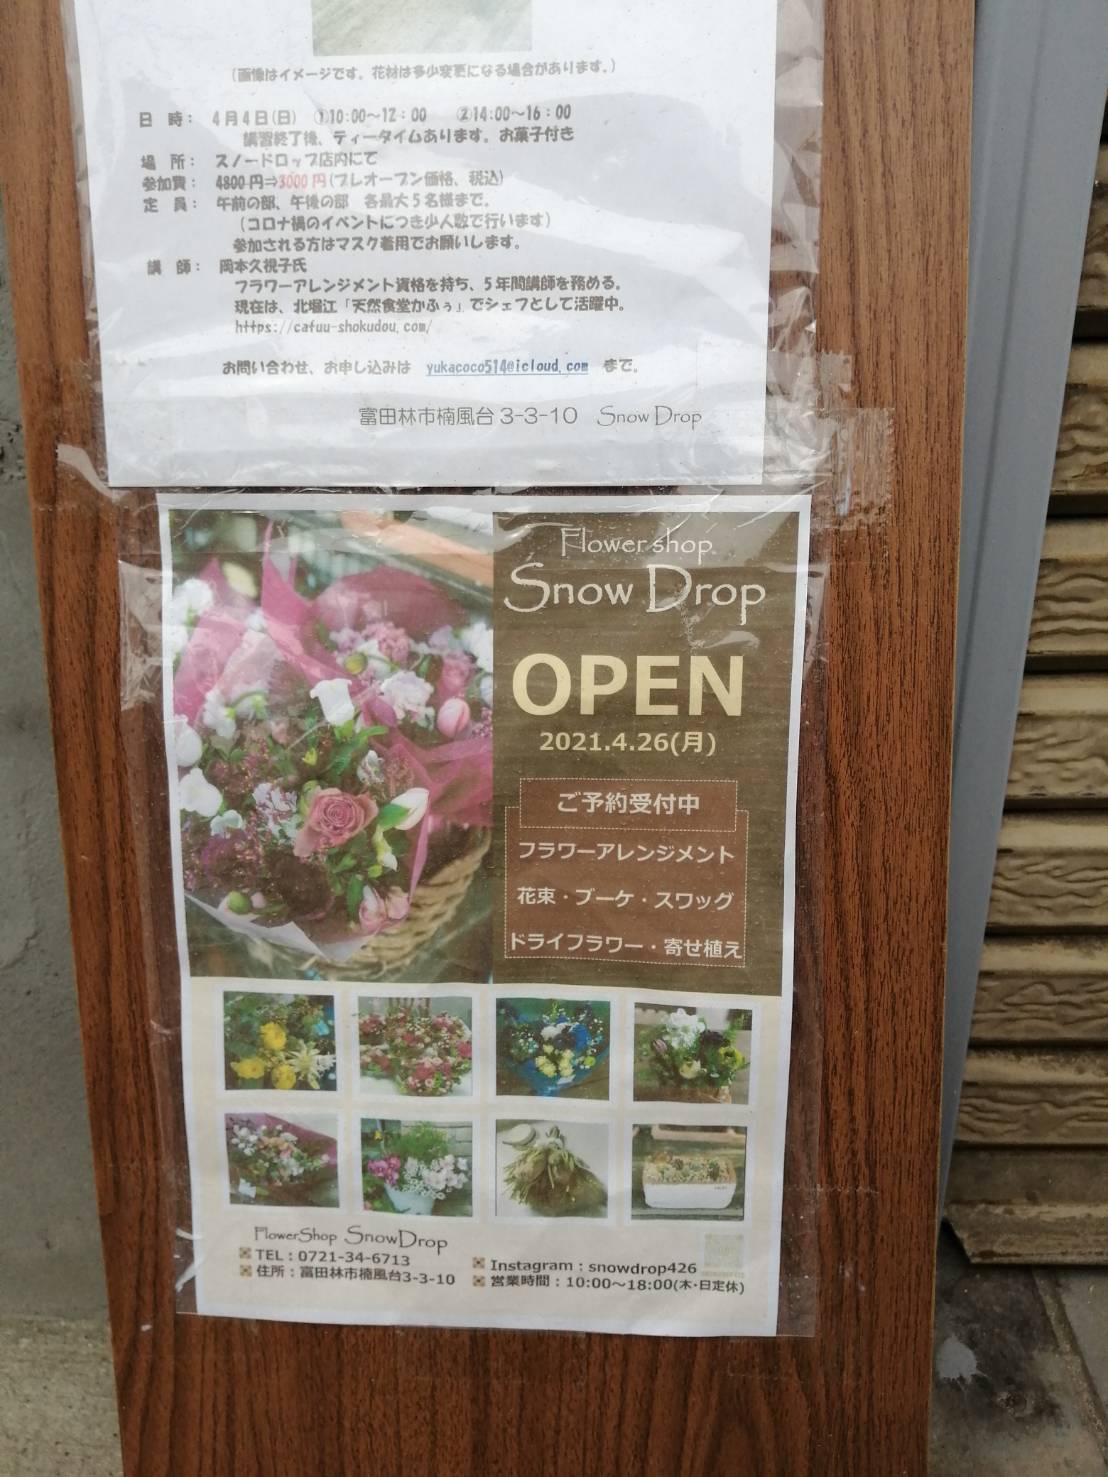 オープン日判明 富田林市にオープンするオシャレなお花屋さん Flower Shop Snow Drop のオープン日がわかりました さかにゅー